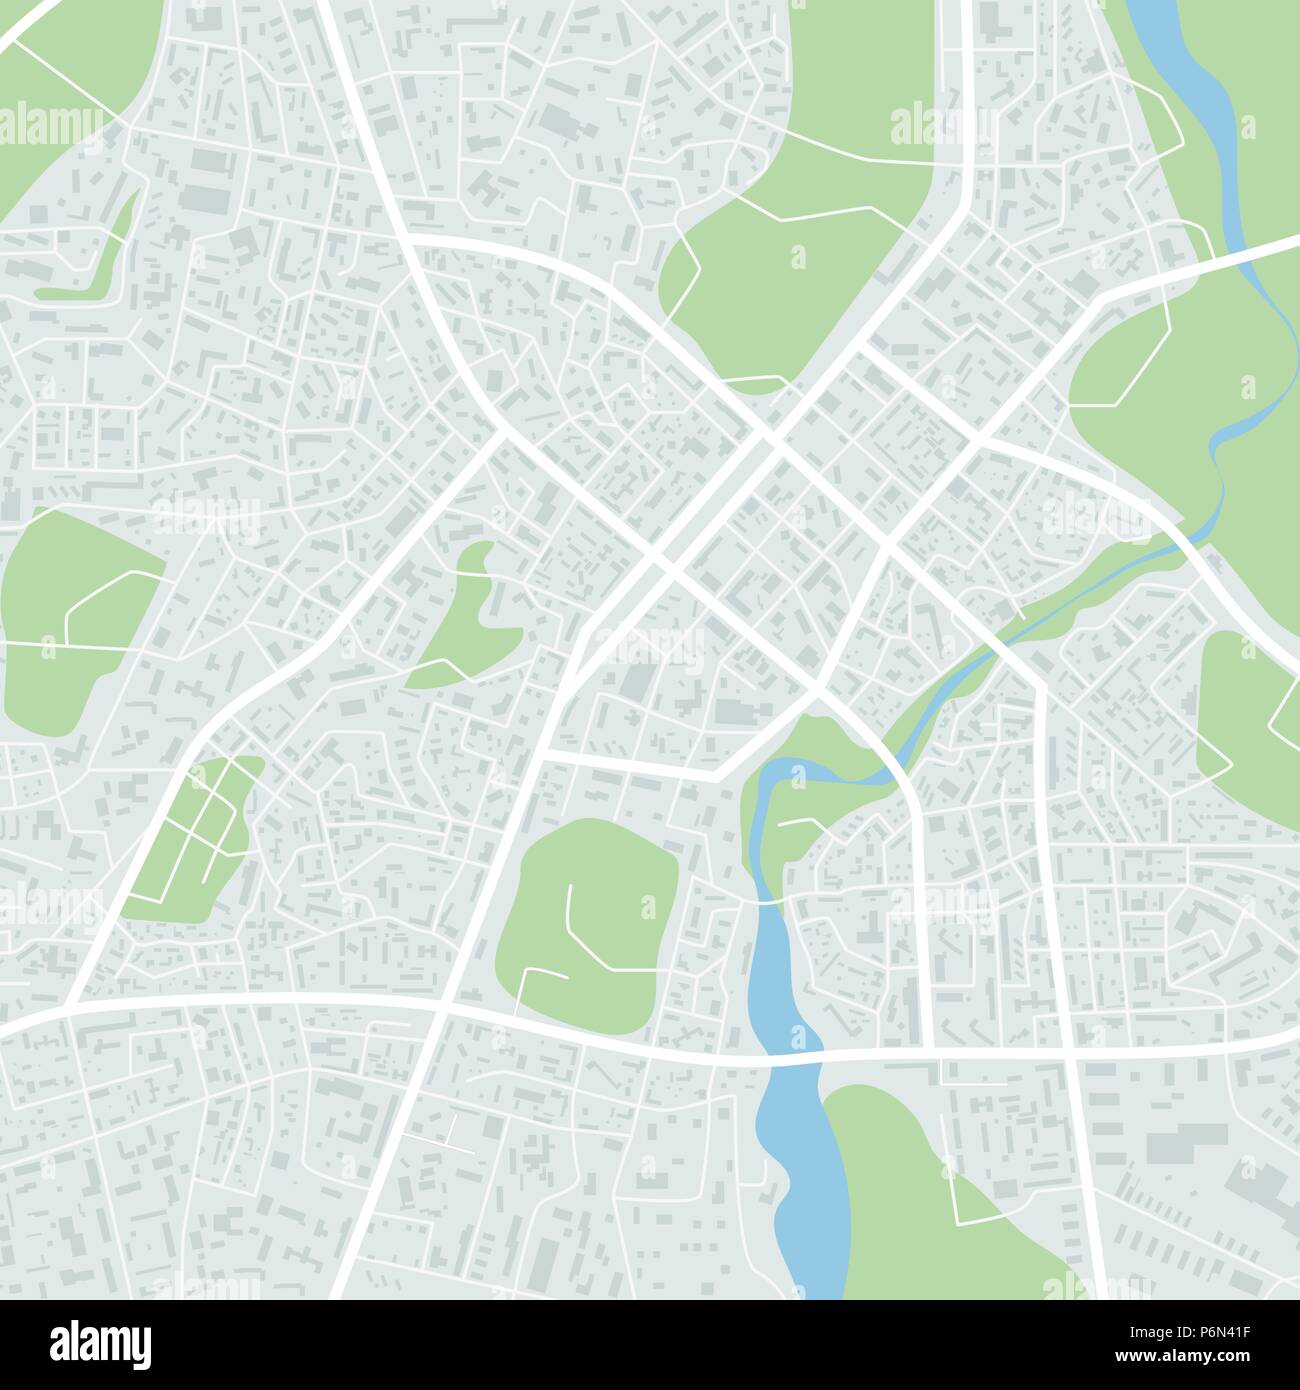 Abstract mappa della città. Centro citta' regime. Il quartiere della città modello di piano. Illustrazione Vettoriale Illustrazione Vettoriale